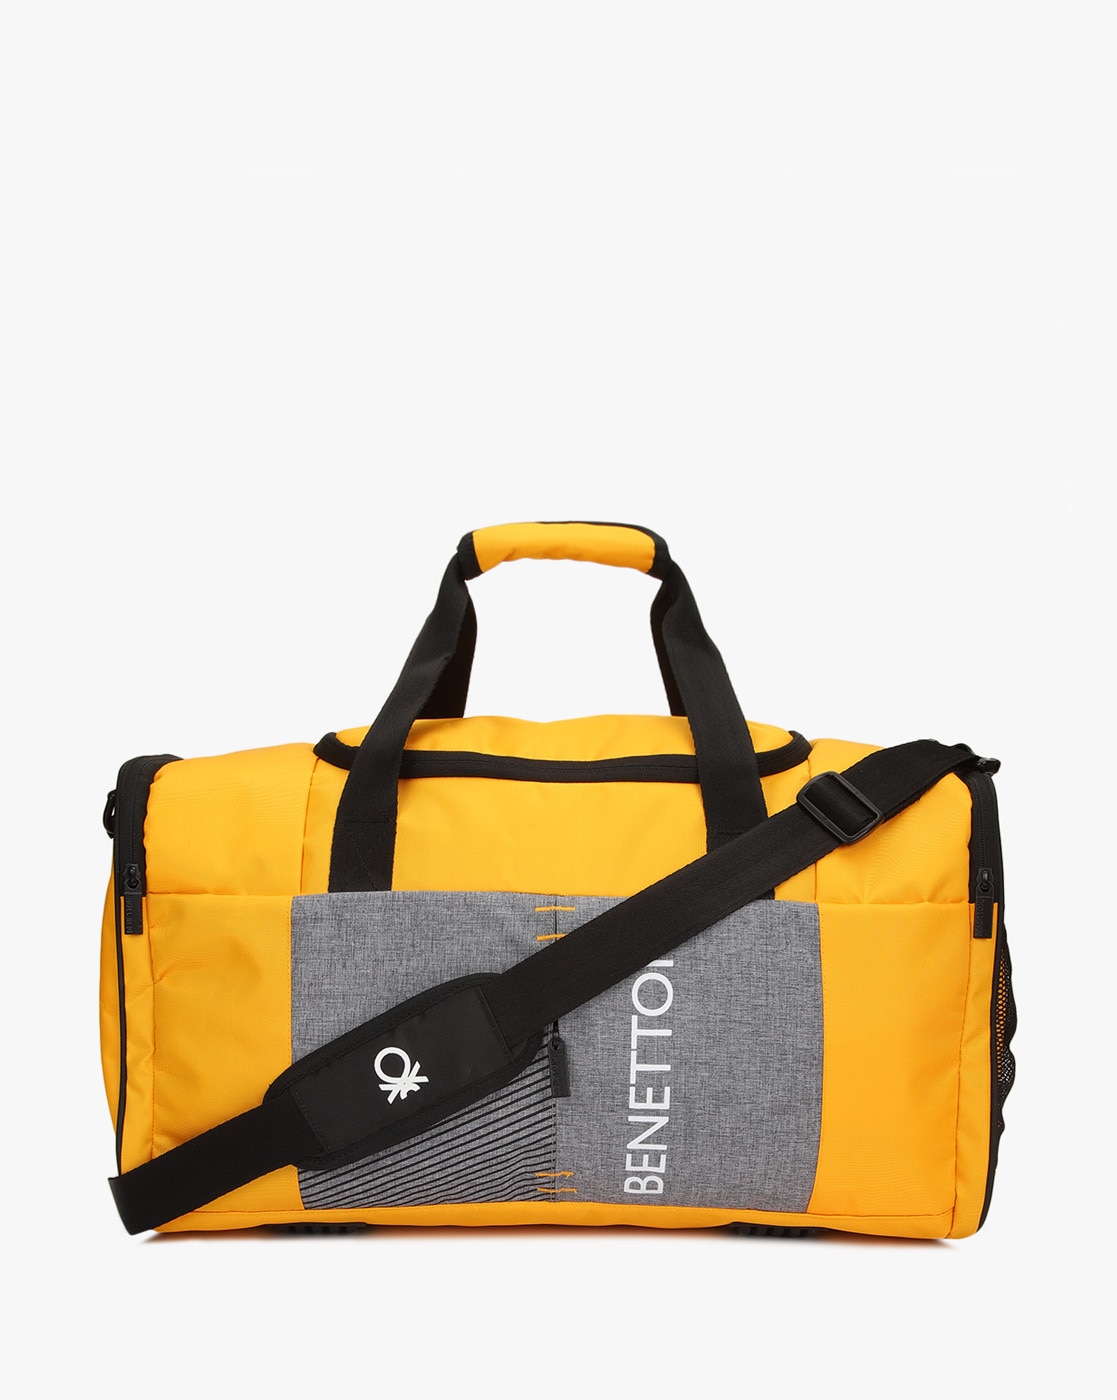 Branded Sling Bags | Custom Logo Printed Sling Bags